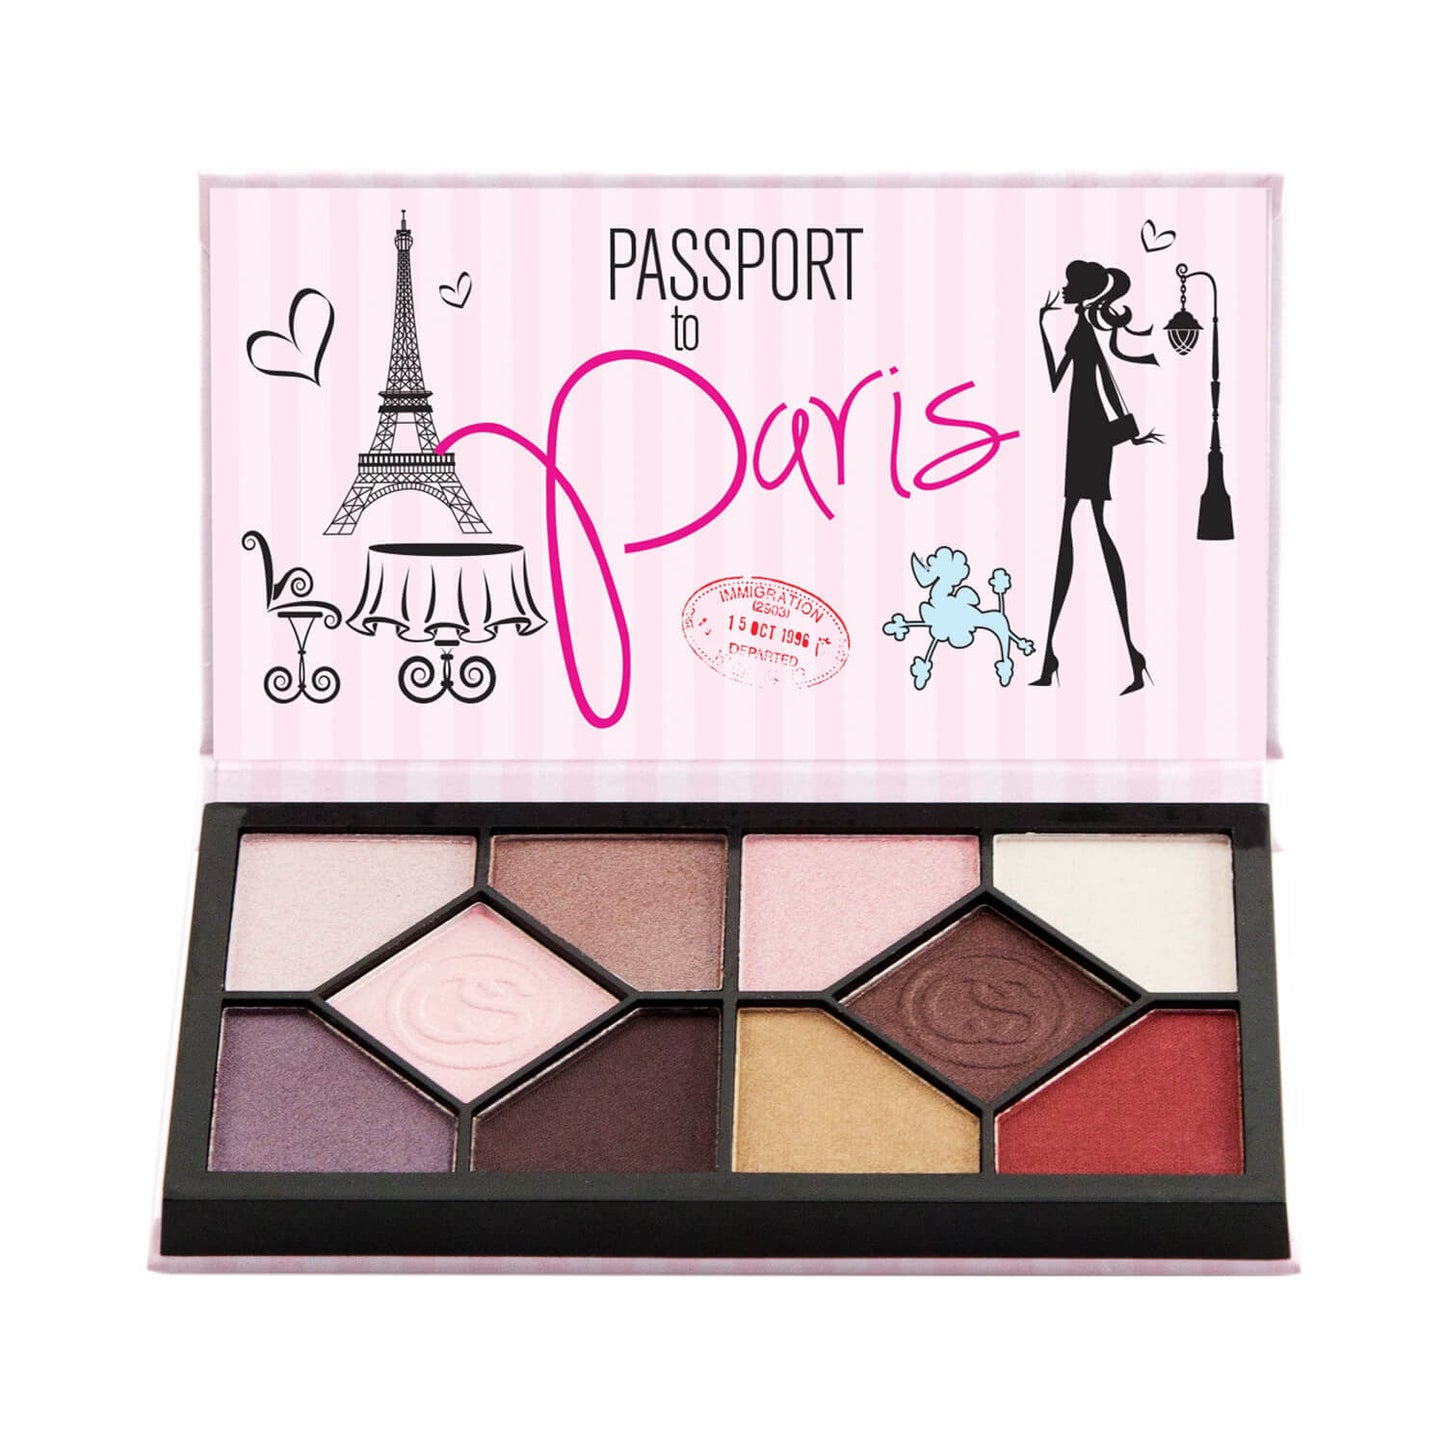 Coastal Scents Passport Eyeshadow Palette Paris